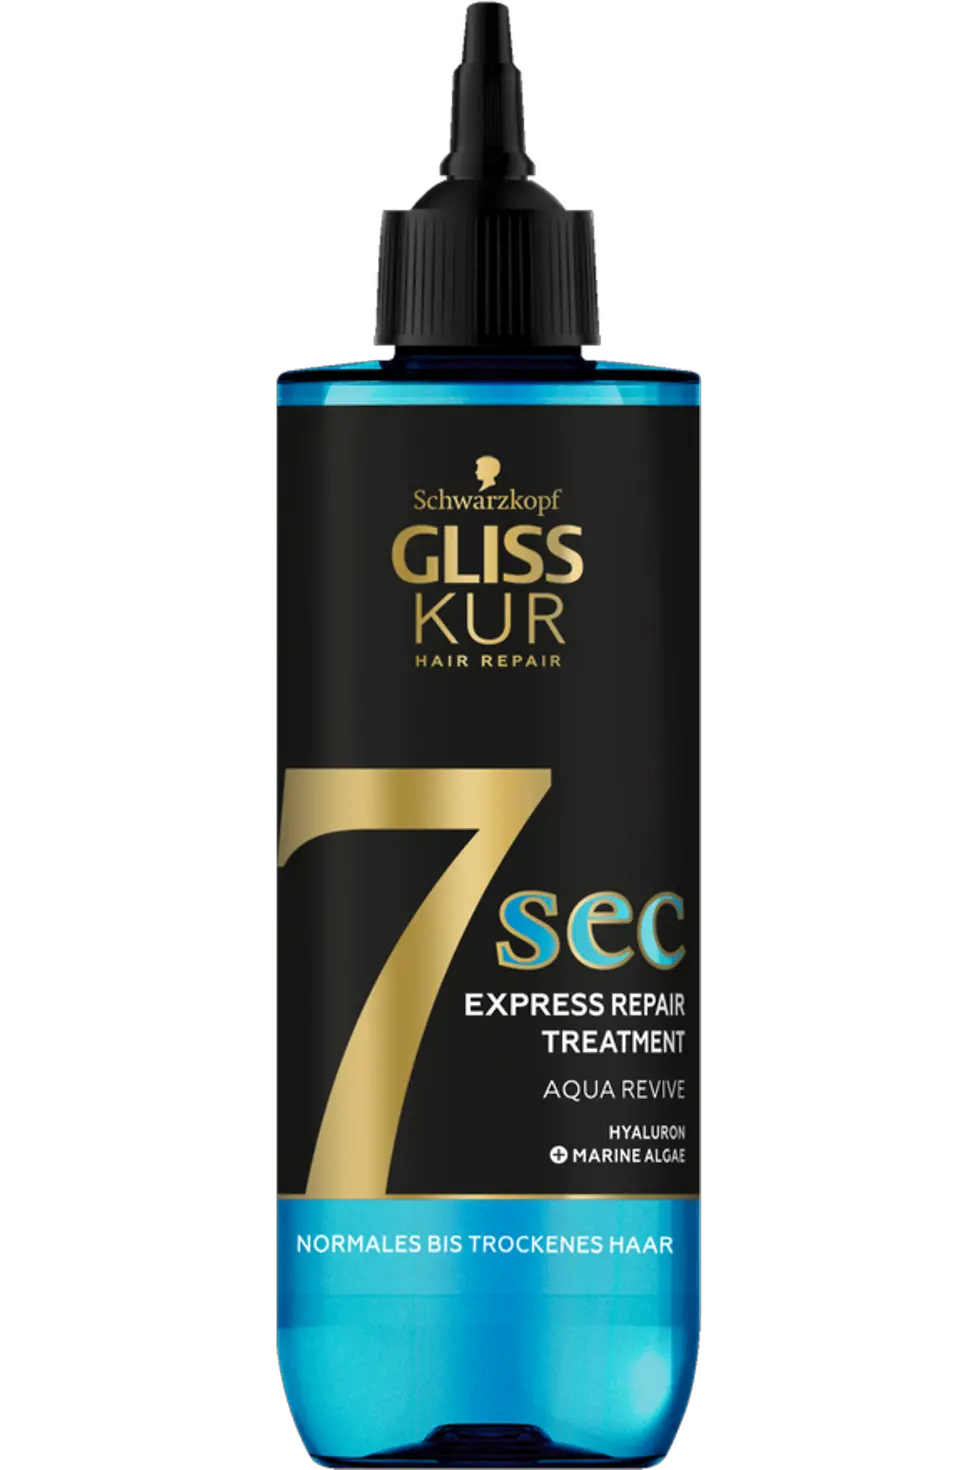 
Gliss 7 Sec Express Repair Treatment Aqua Revive